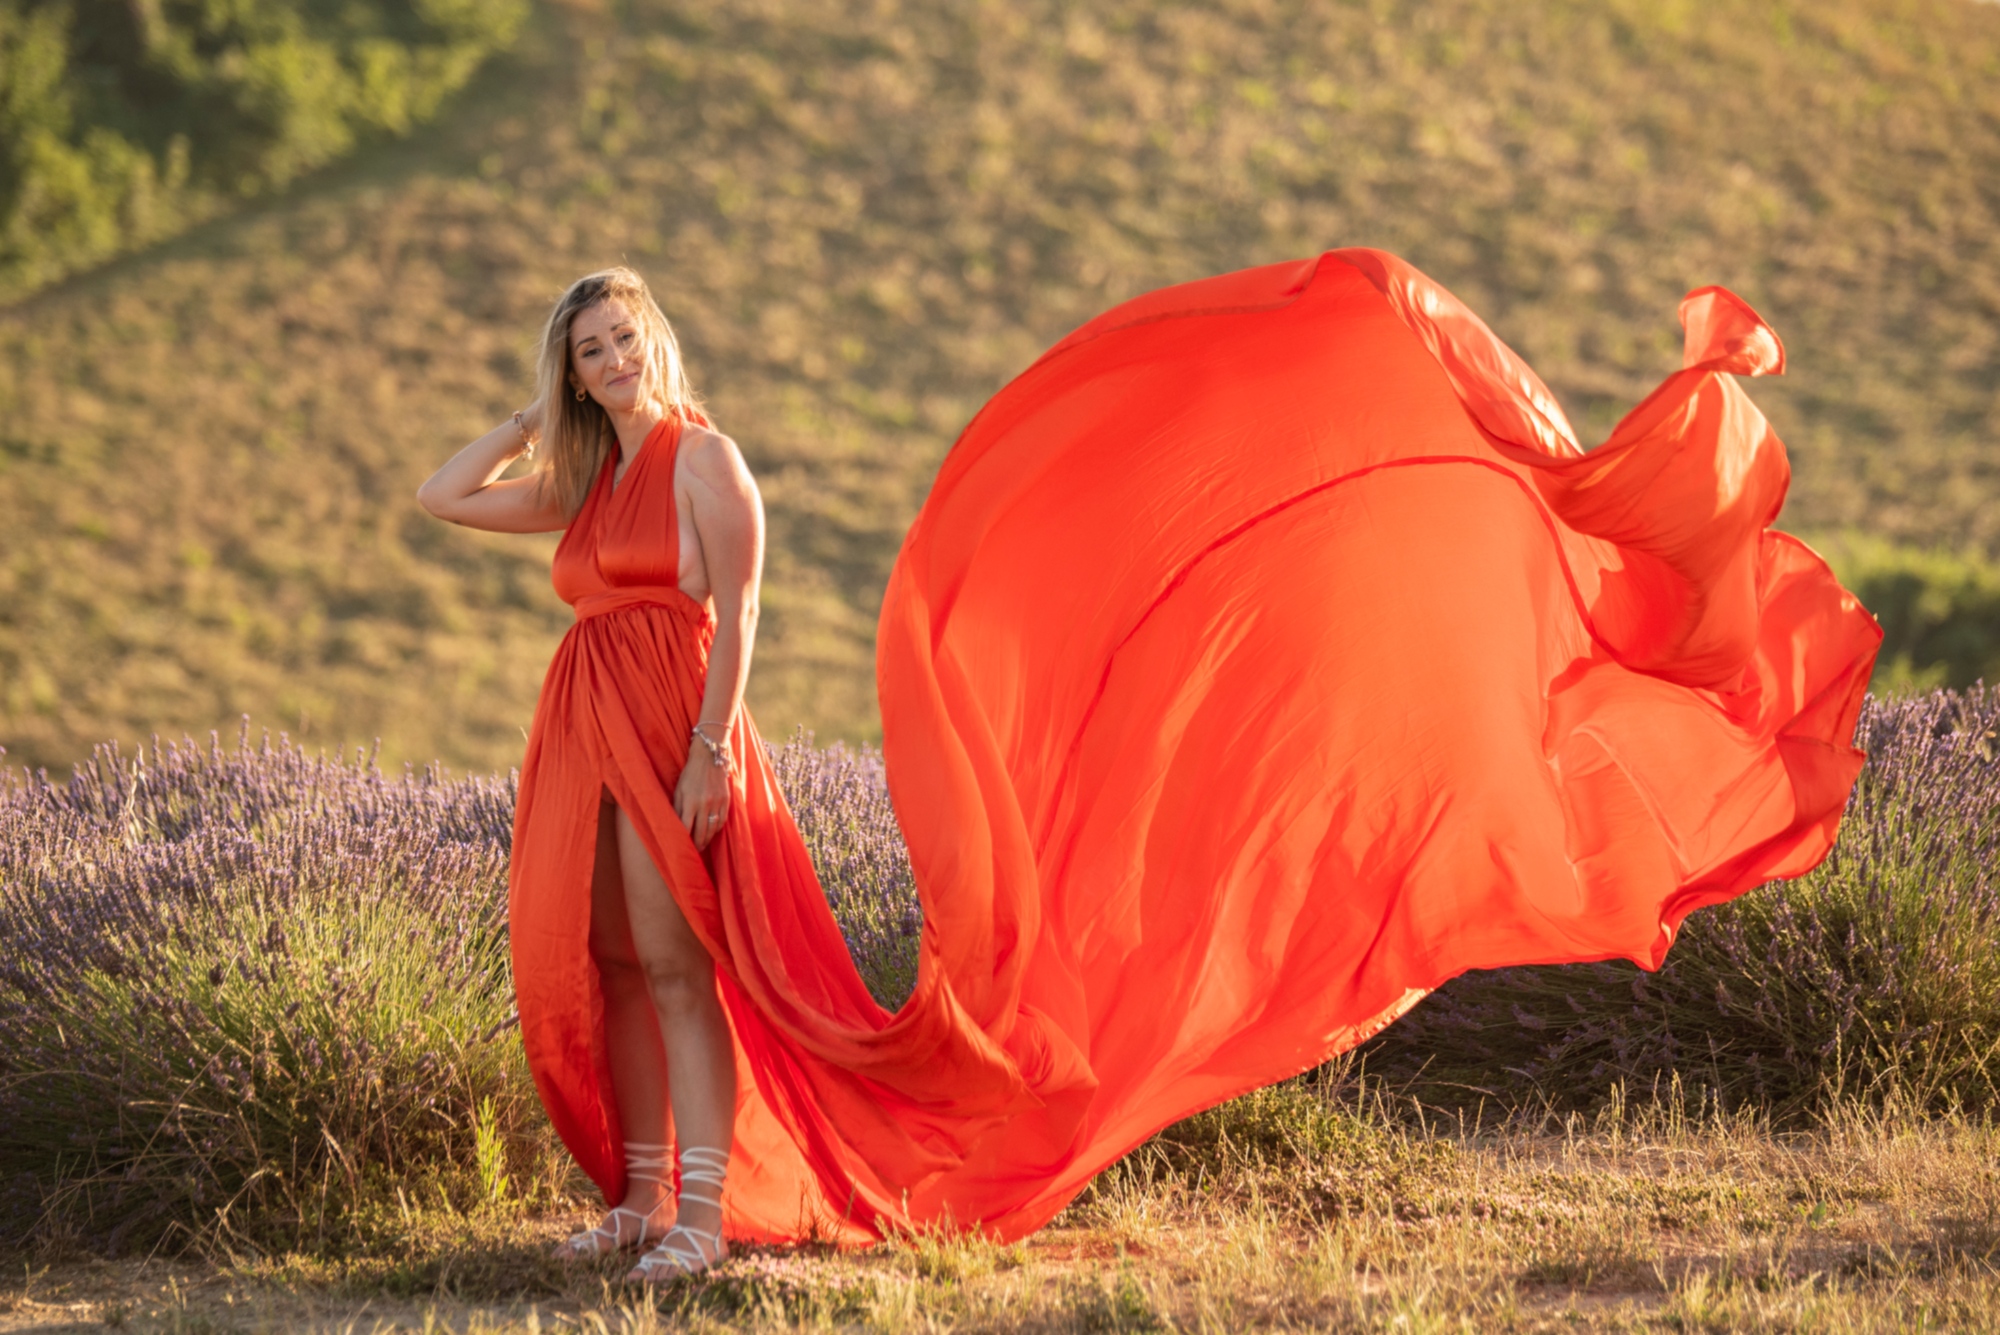 Sesión de fotos en los campos toscanos con vestido flotante